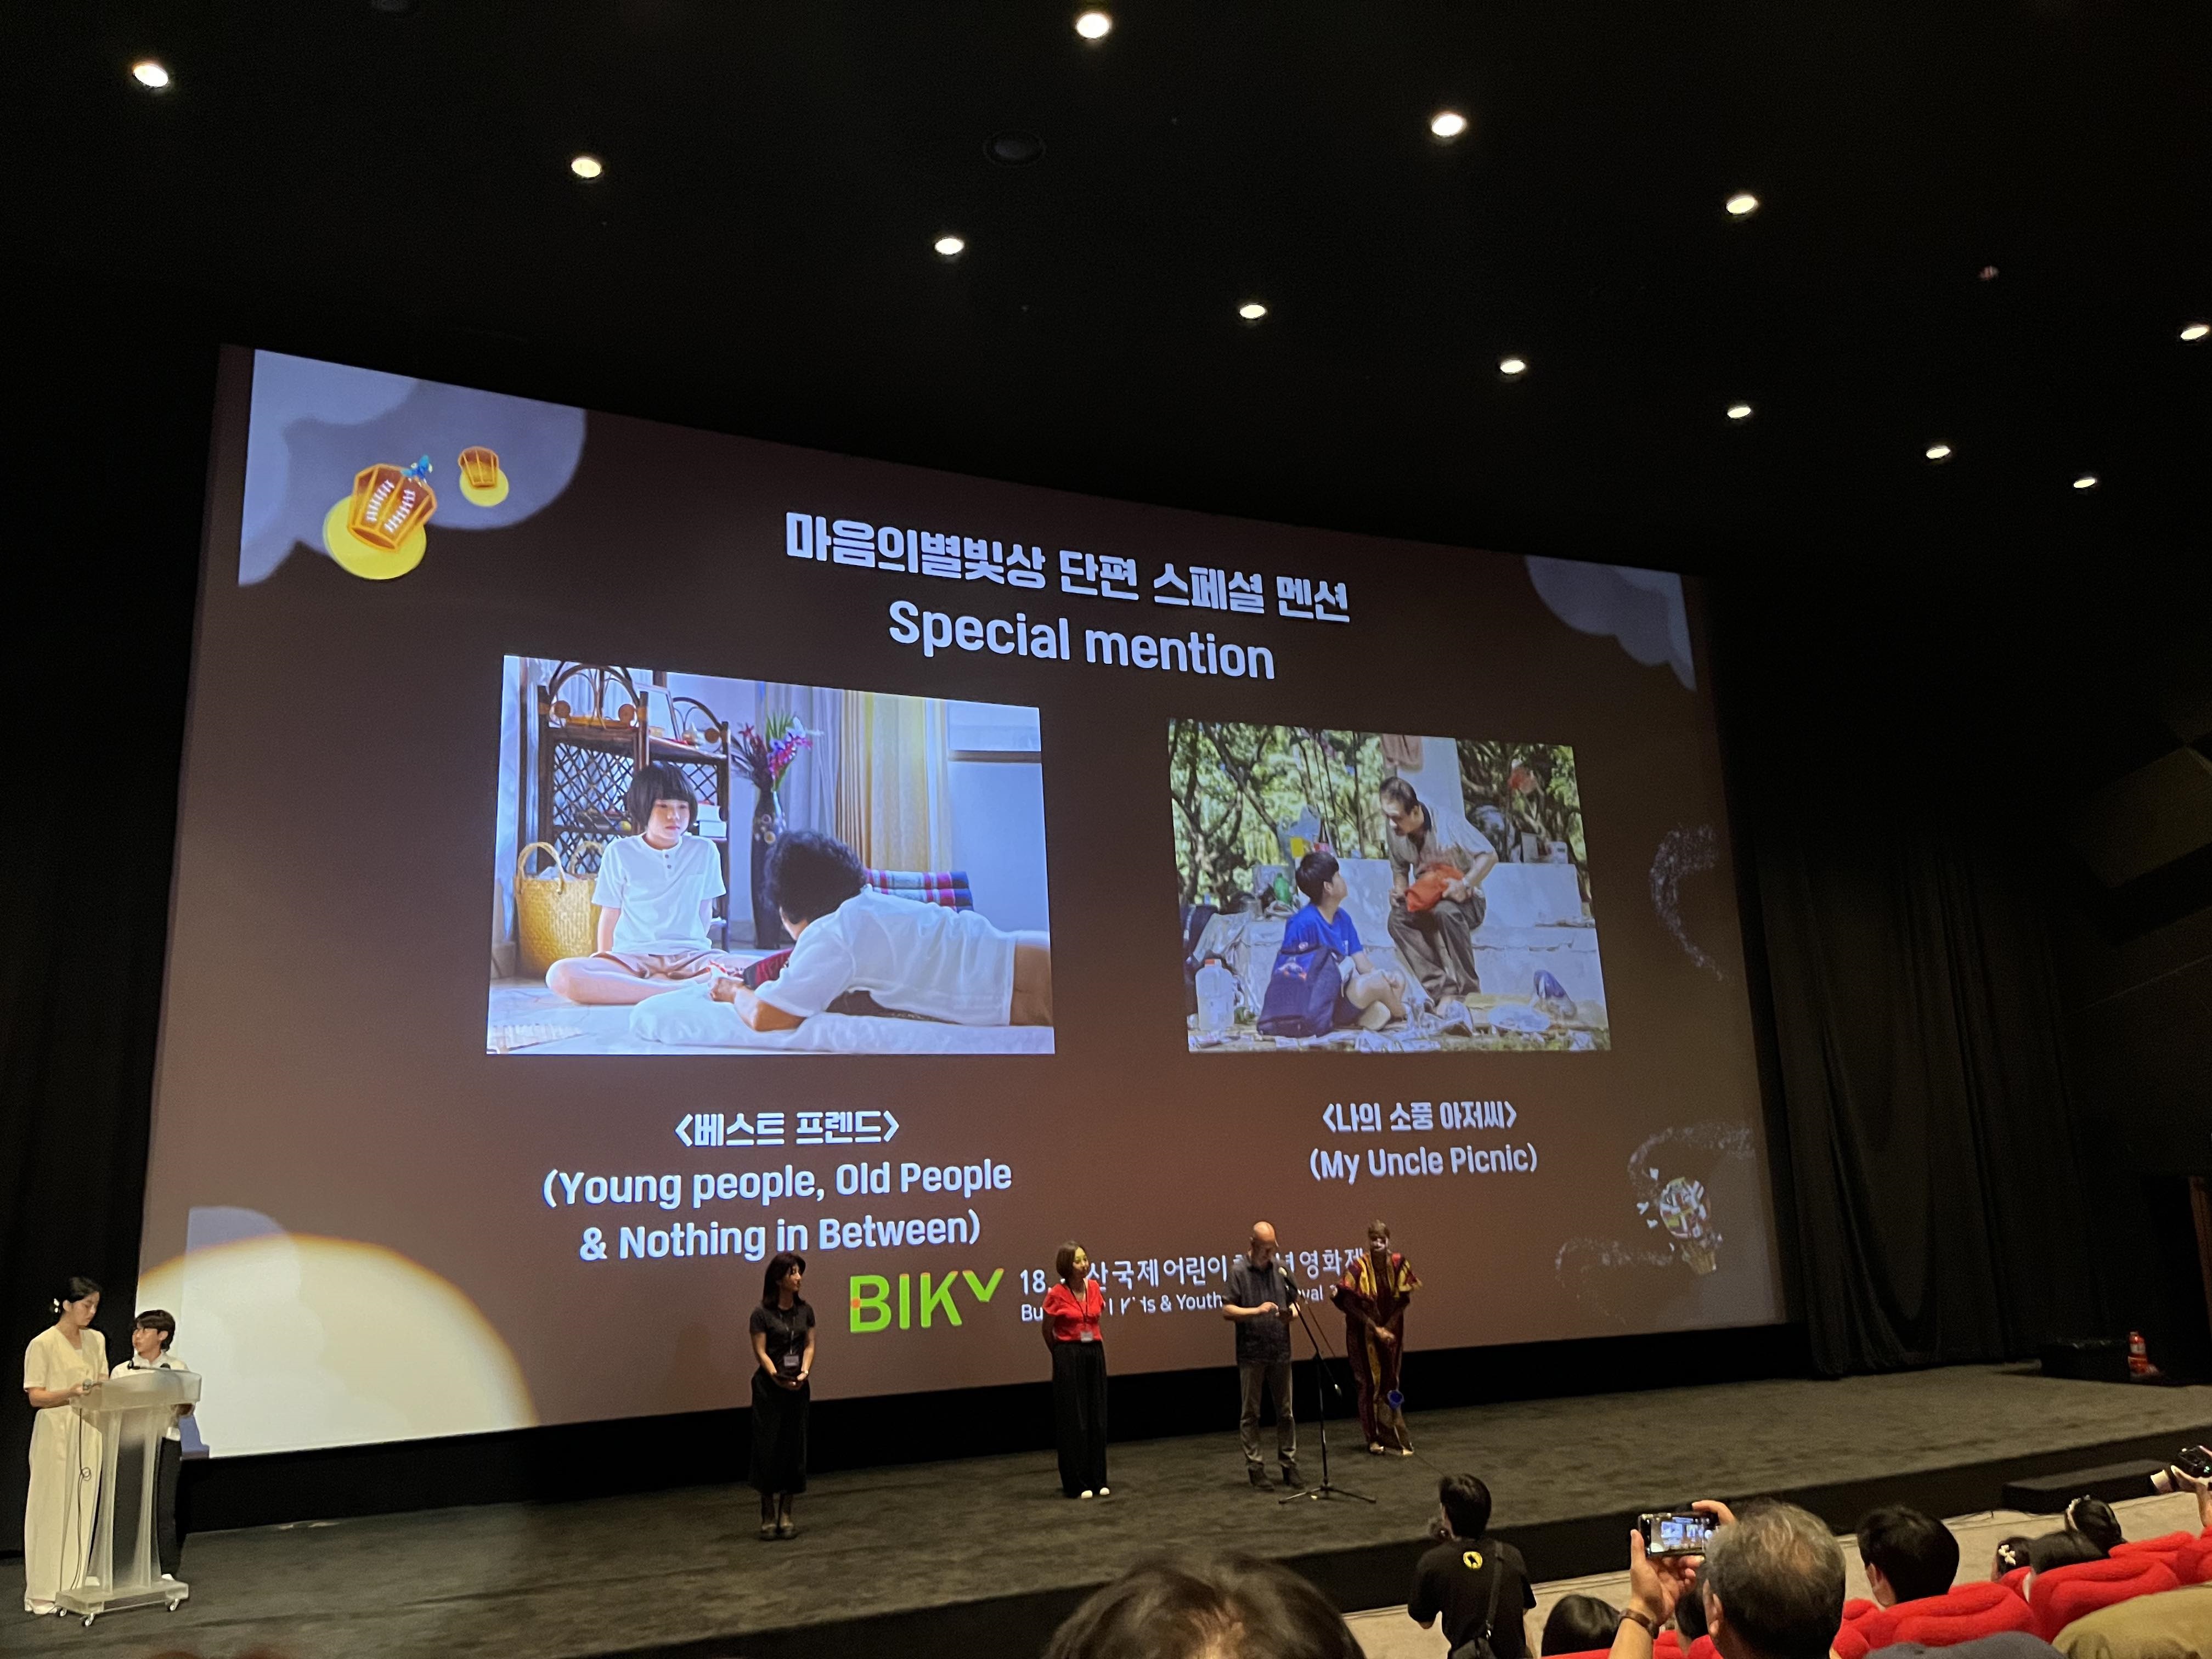 恭喜！本系陳宇祥作品獲得 2023 年韓國釜山兒少影展（BIKY）的評審團特別賞